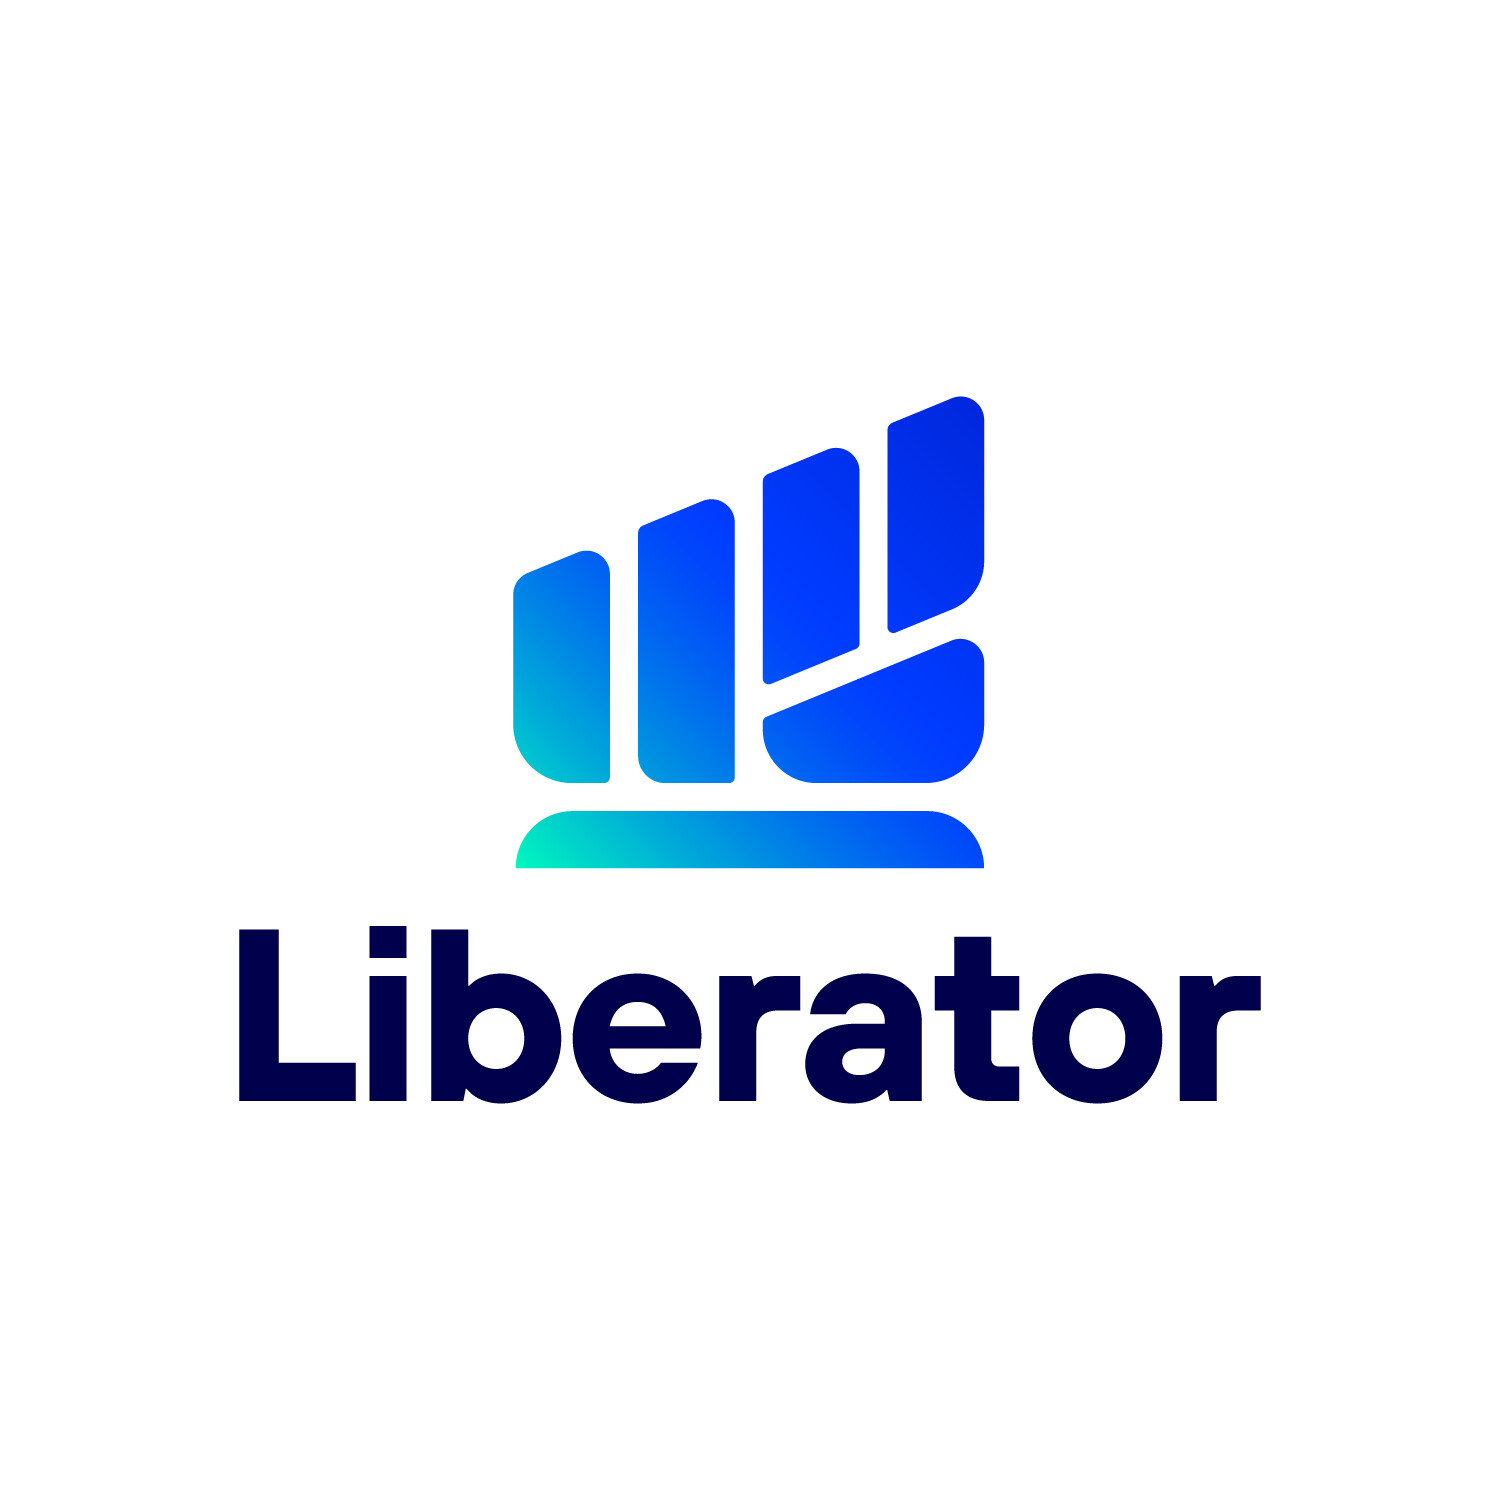 บล.ลิเบอเรเตอร์ เปิดตัวทีมวิเคราะห์หลักทรัพย์ นำทัพโดย "จรูญพันธ์ วัฒนพันธ์" พร้อมปูทางสู่ Liberator Academy เริ่มโปรเจกต์แรกกับ "LIB Talks" 15 พ.ค.นี้!